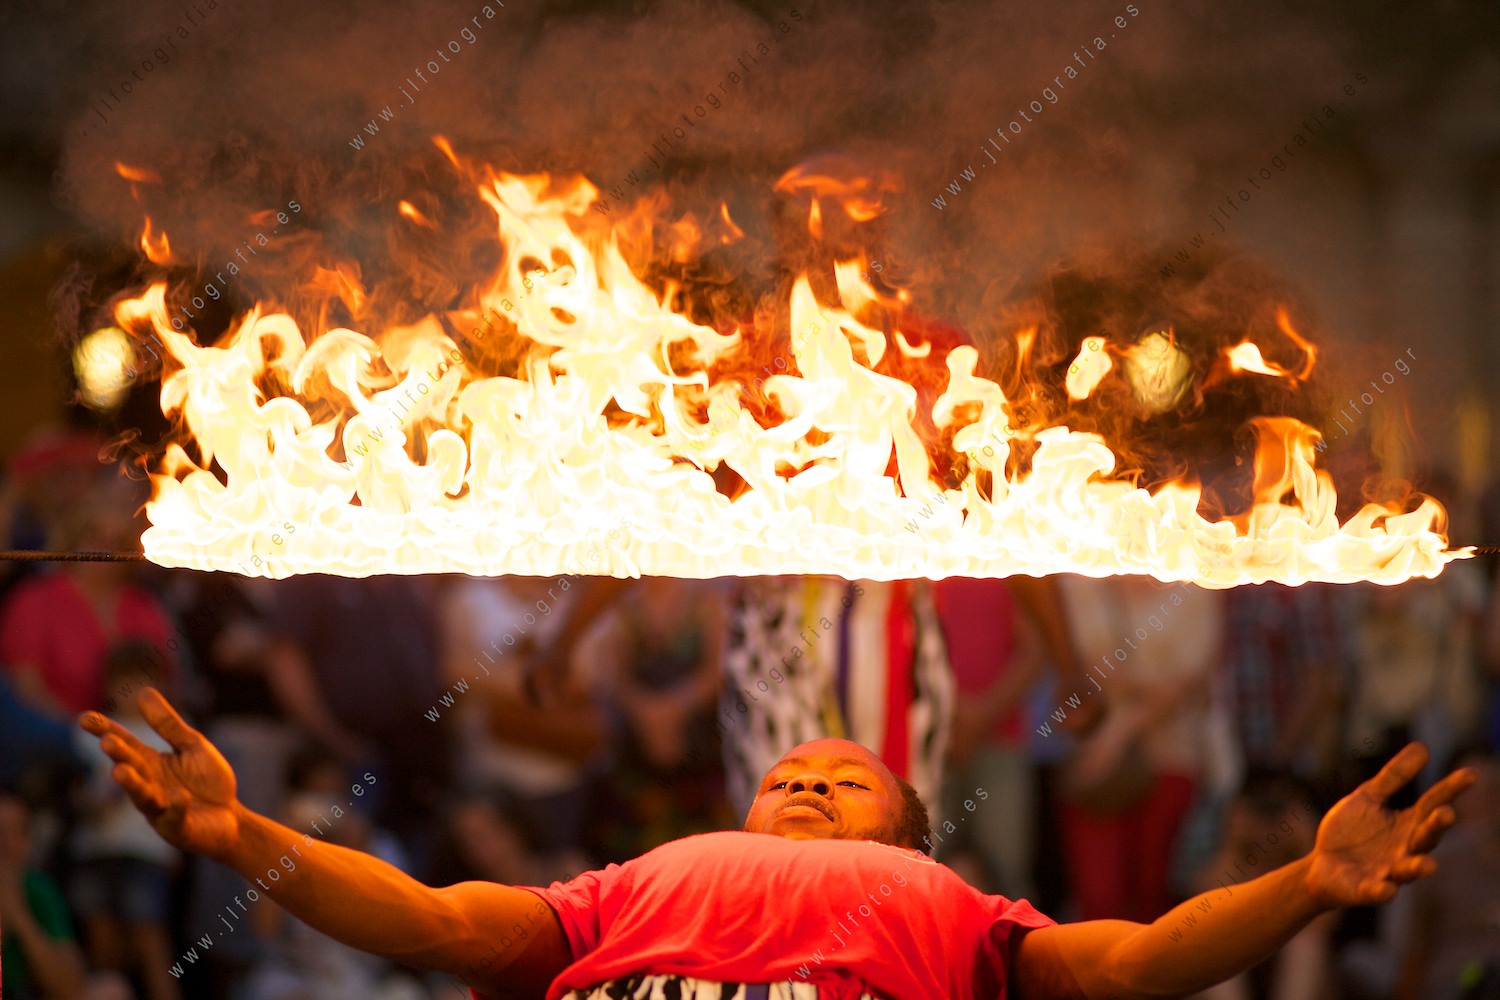 Acróbata pasando en equilibrio bajo una barra de fuego en llamas